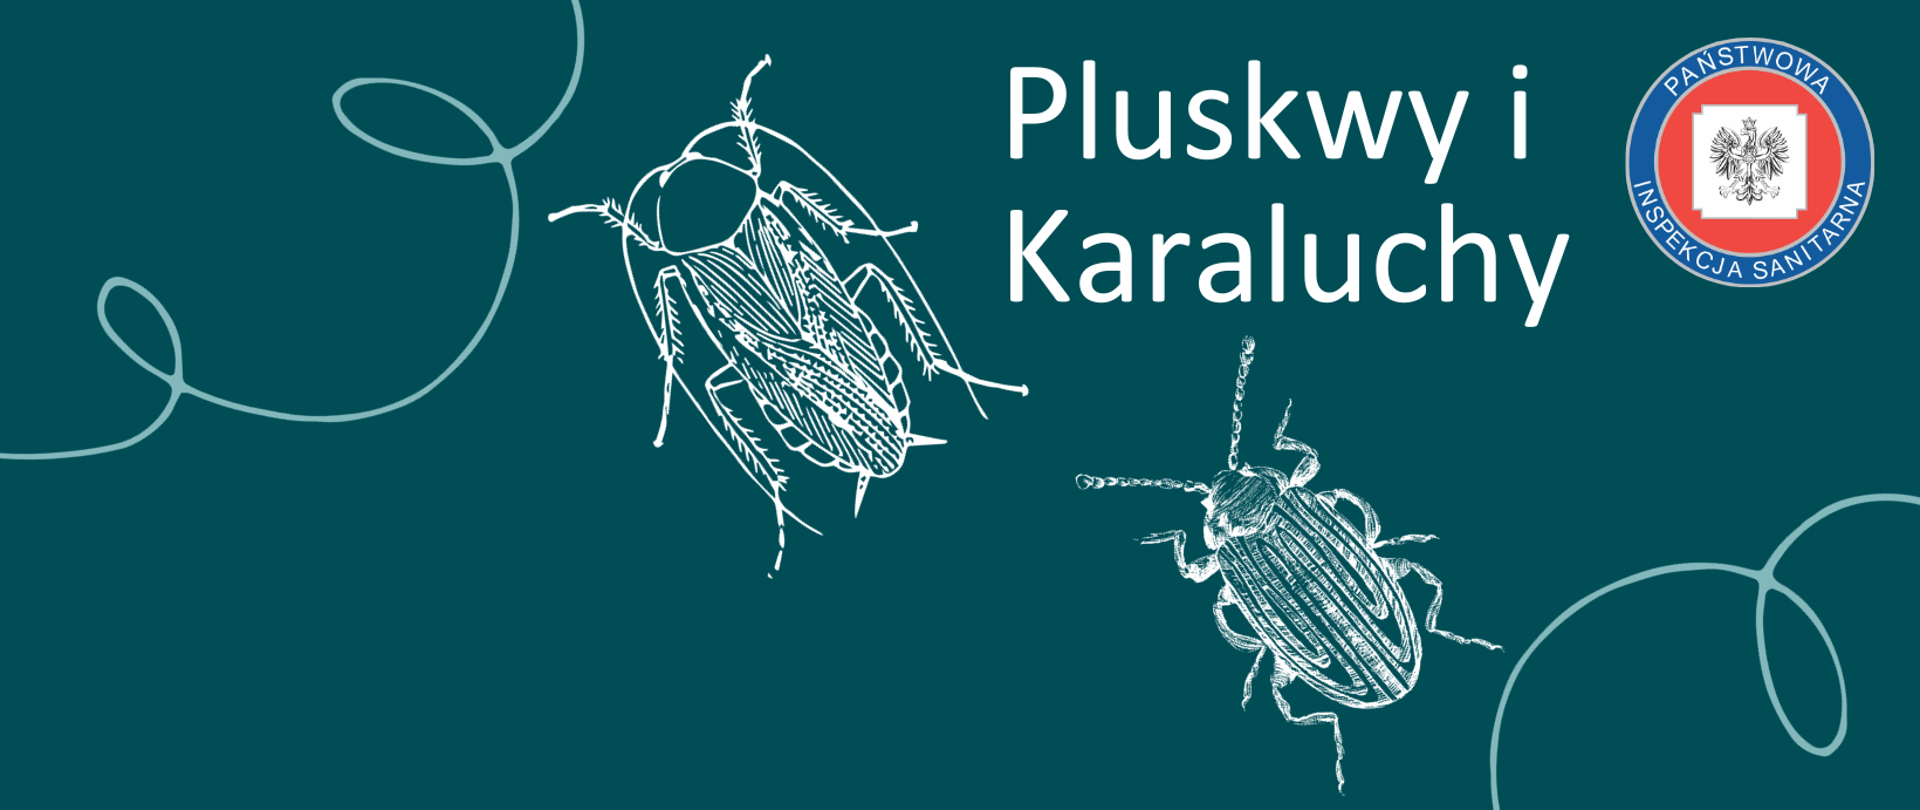 grafika przedstawia dwa groźne insekty: karalucha i pluskwę oraz logo inspekcji sanitarnej